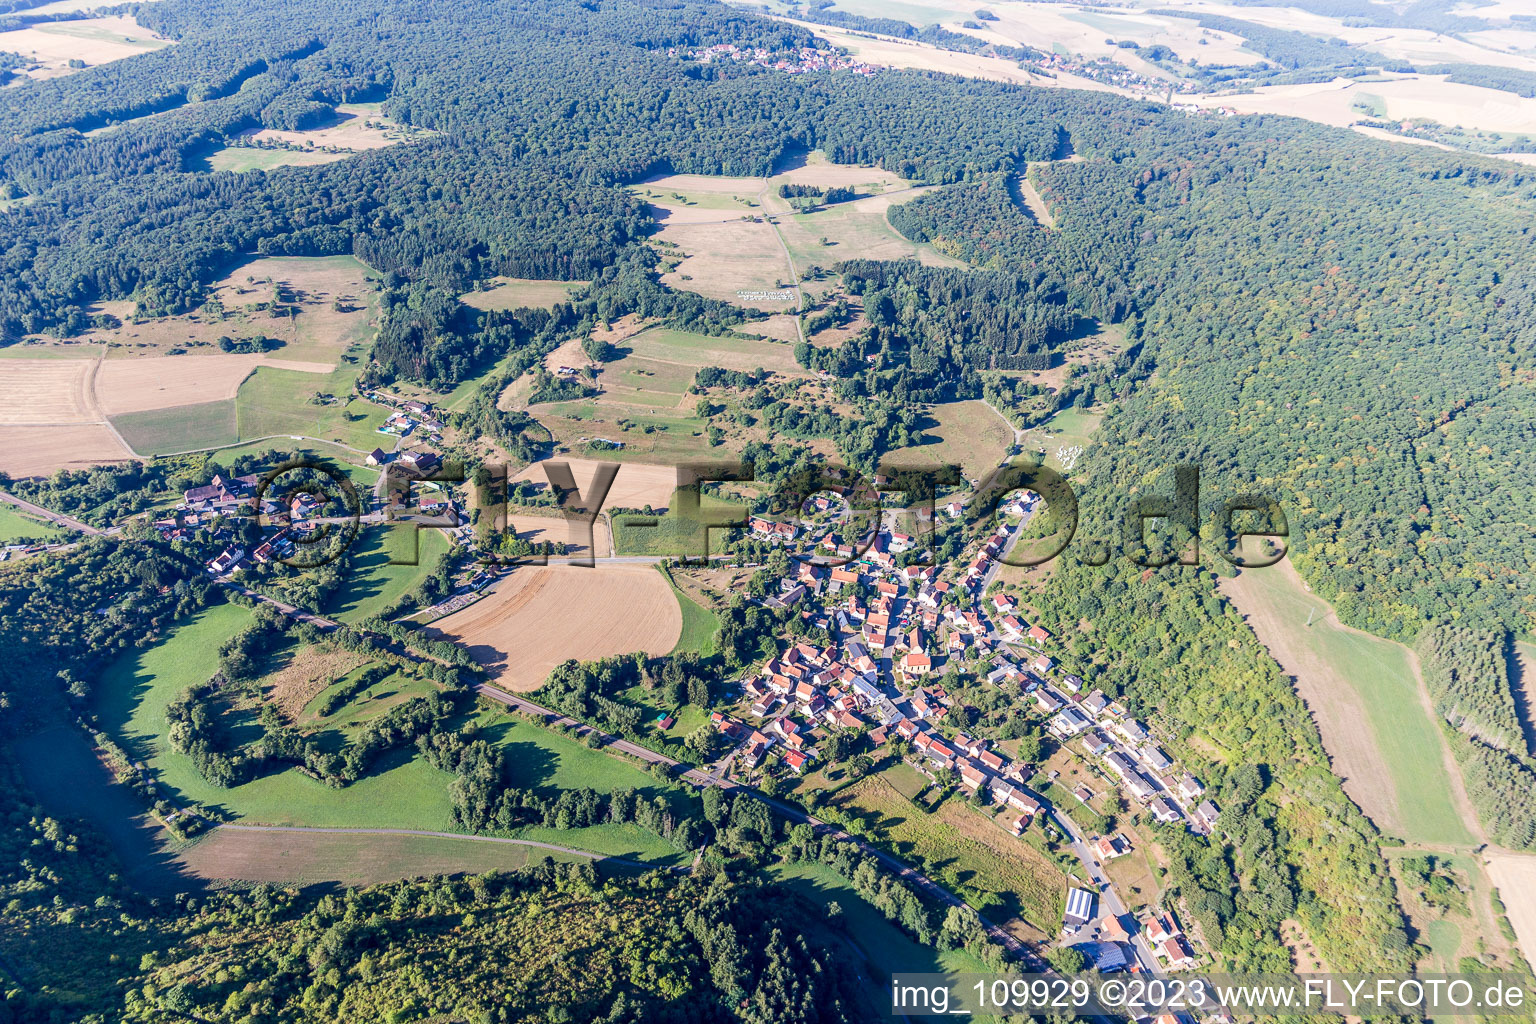 Mannweiler-Cölln dans le département Rhénanie-Palatinat, Allemagne vue d'en haut